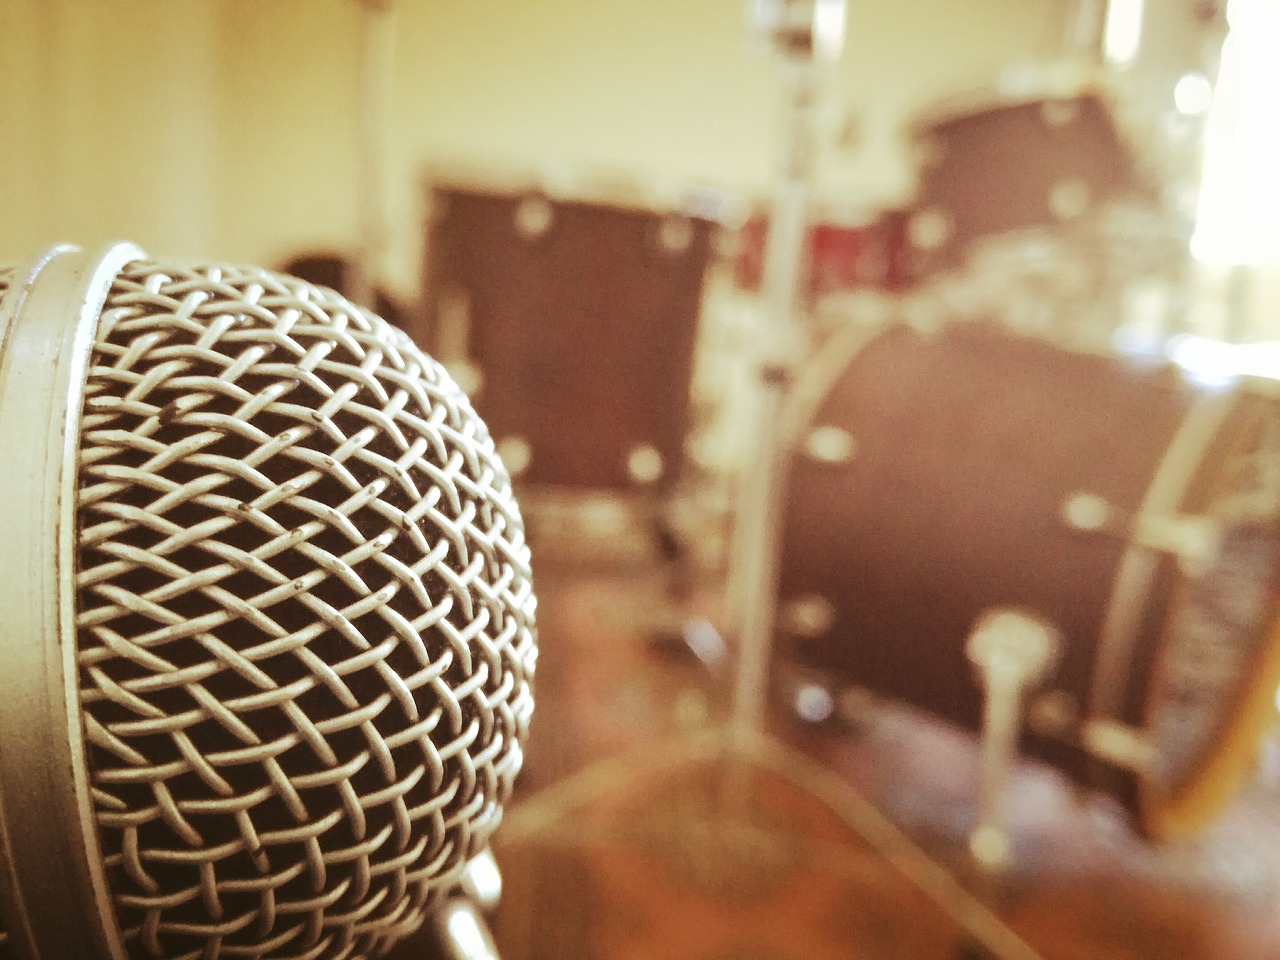 Pixabay music. Классные картинки с микрофоном.